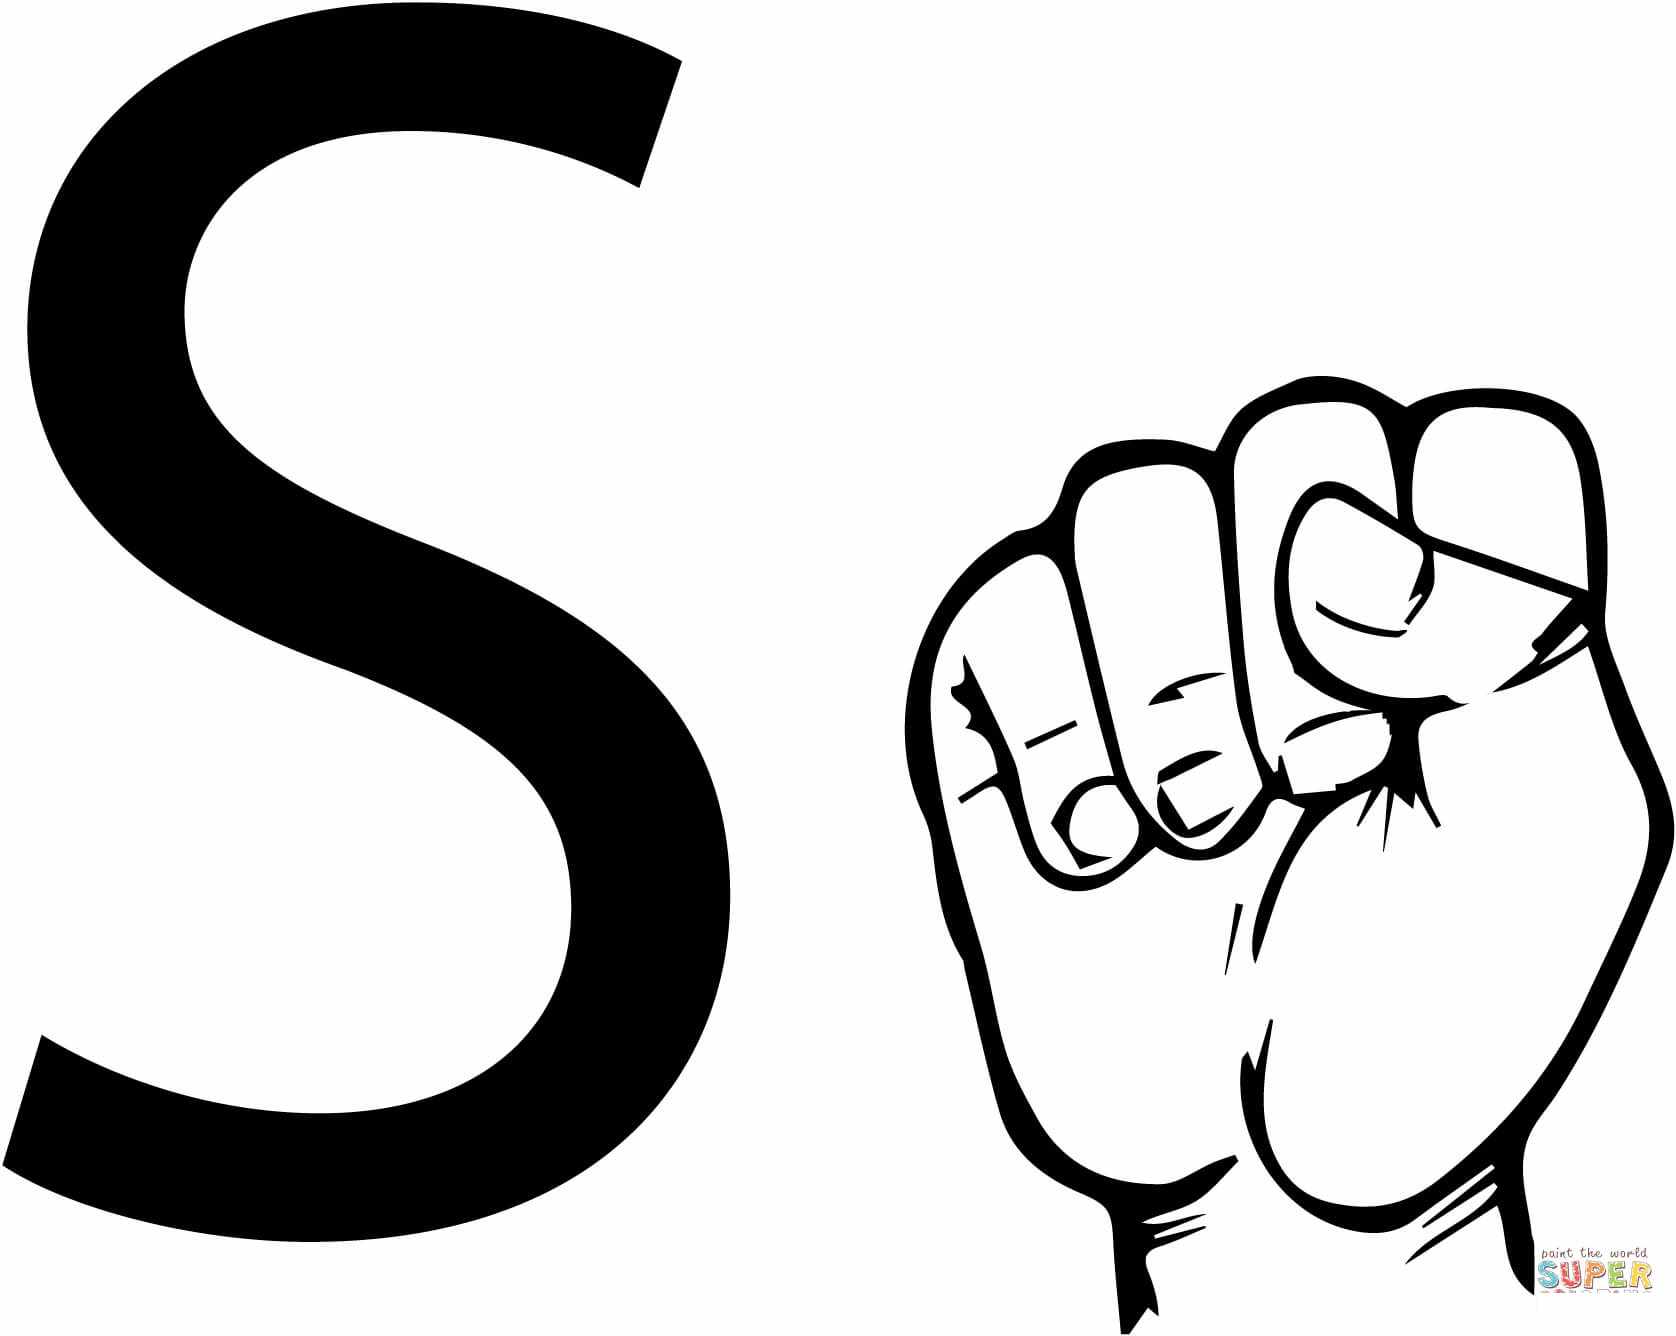 Буква S на языке жестов ASL